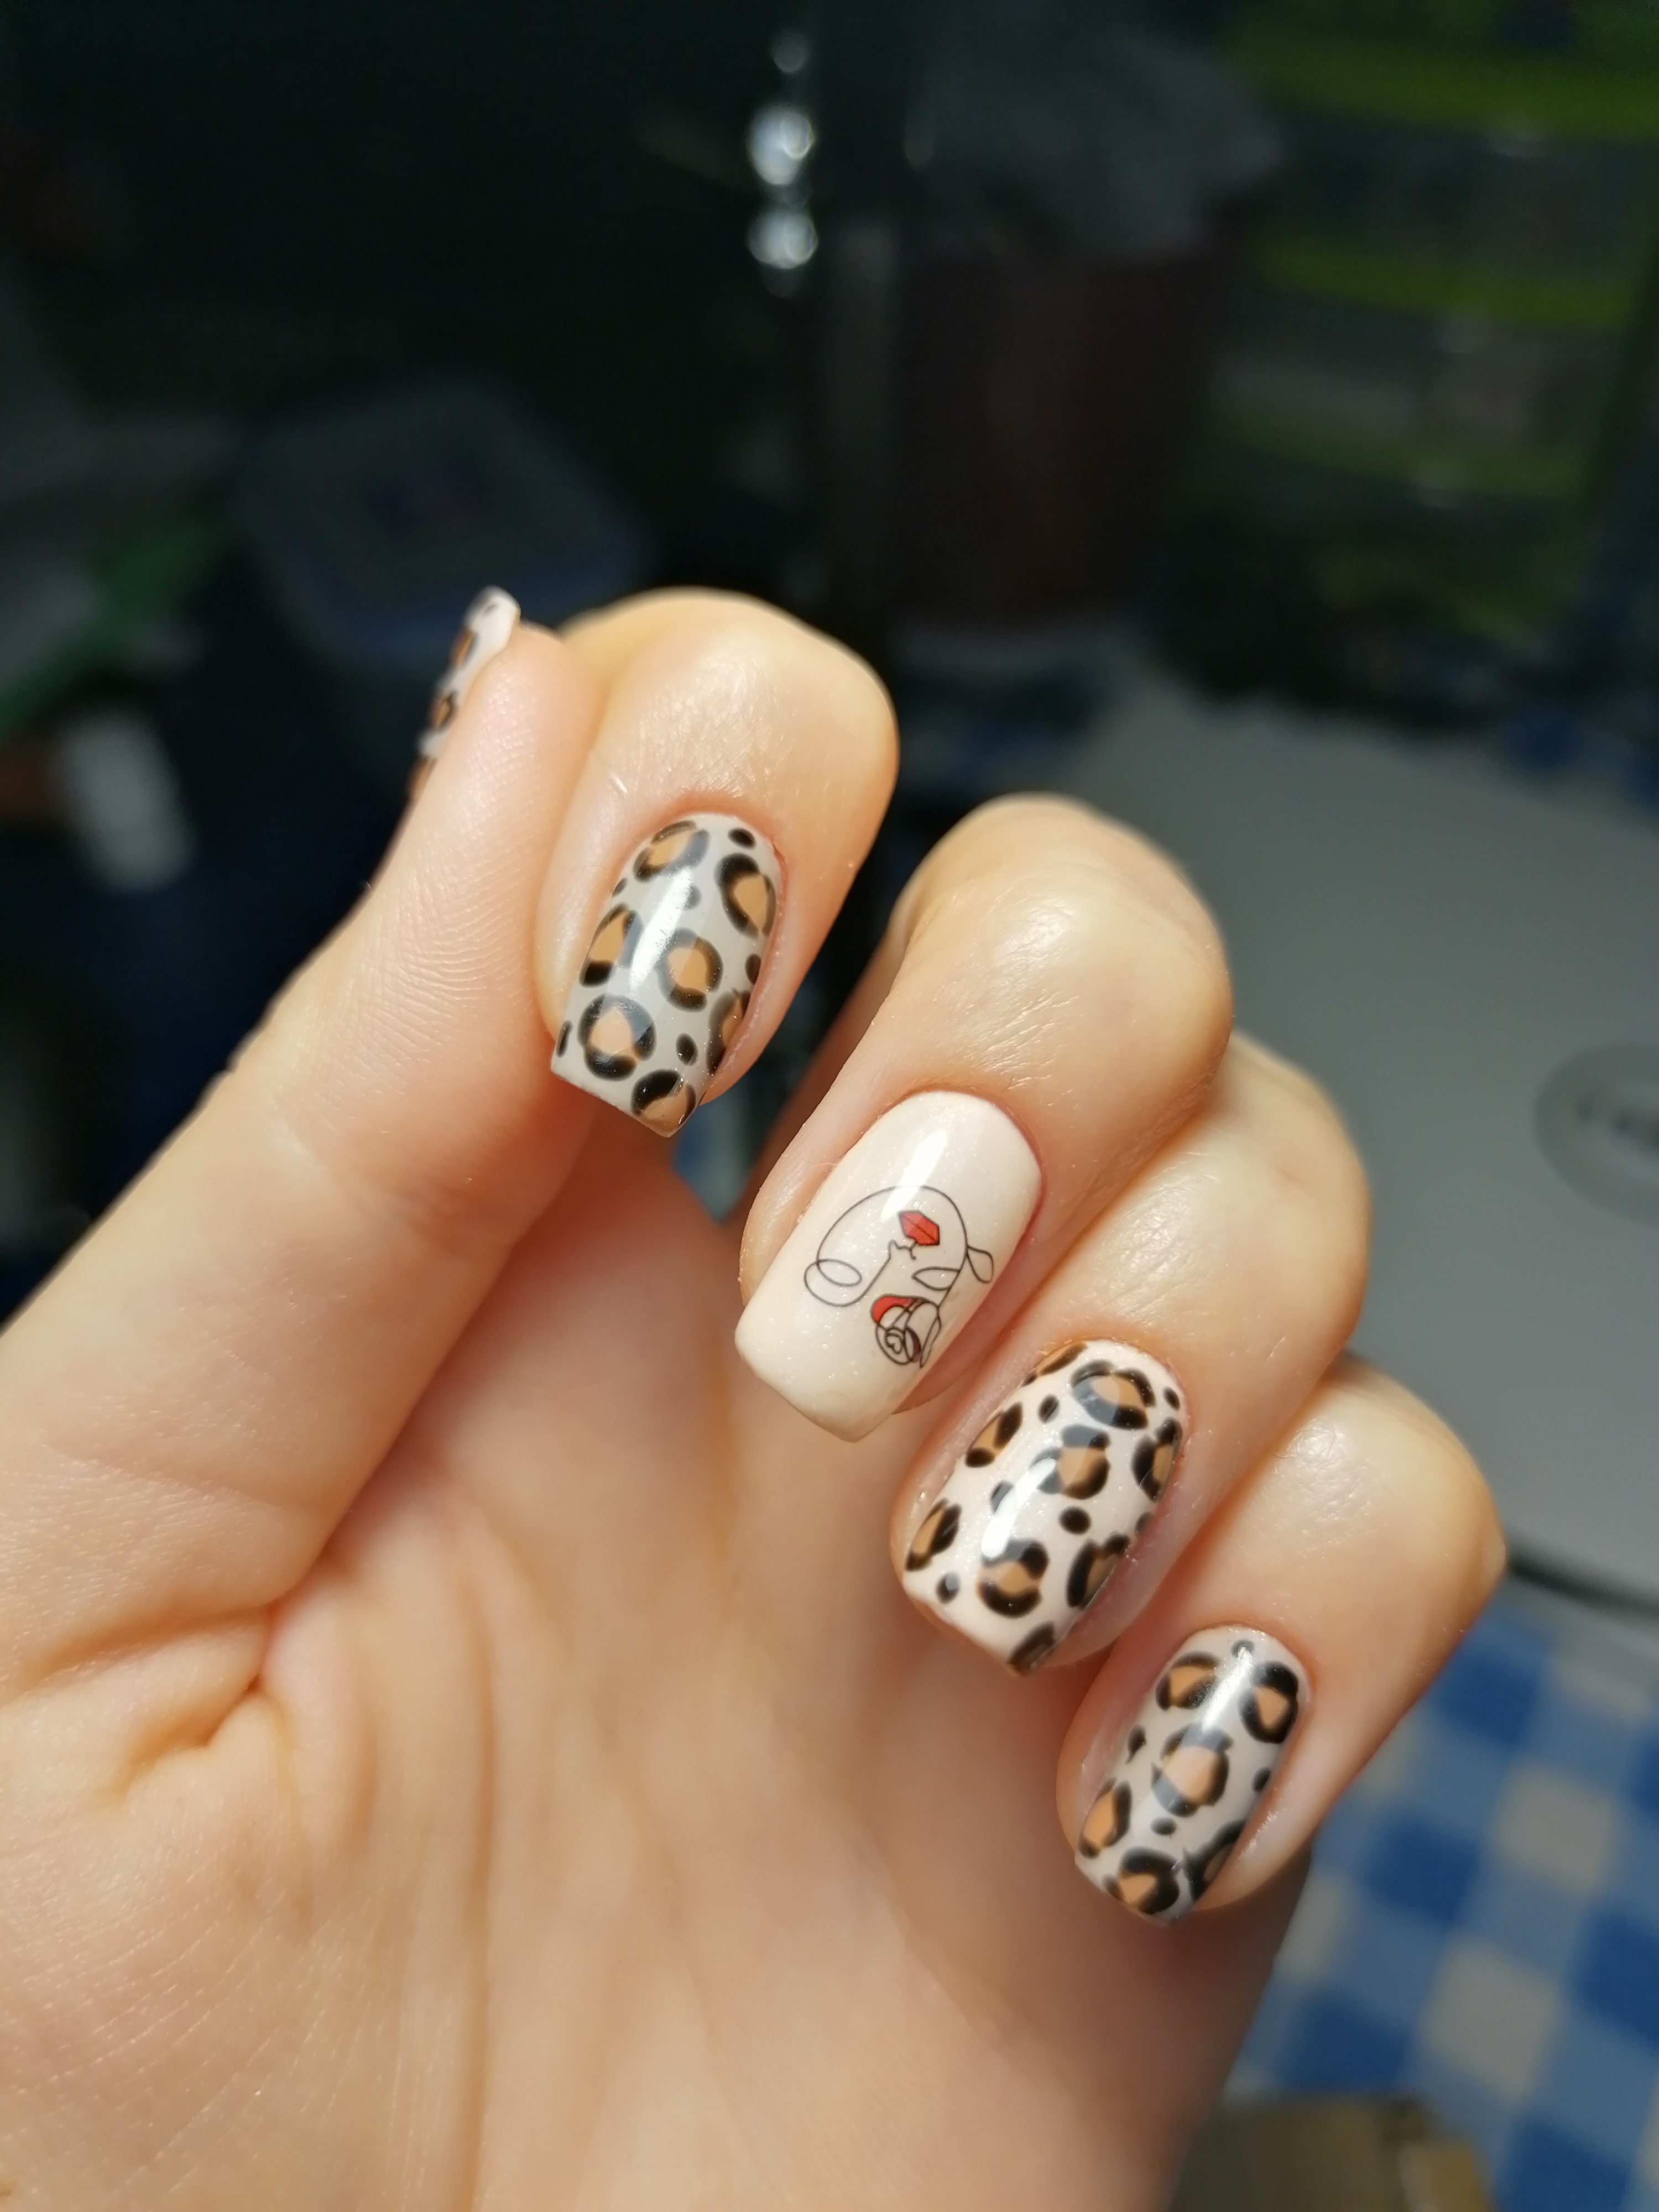 Маникюр с леопардовым принтом в бежевом цвете на короткие ногти.